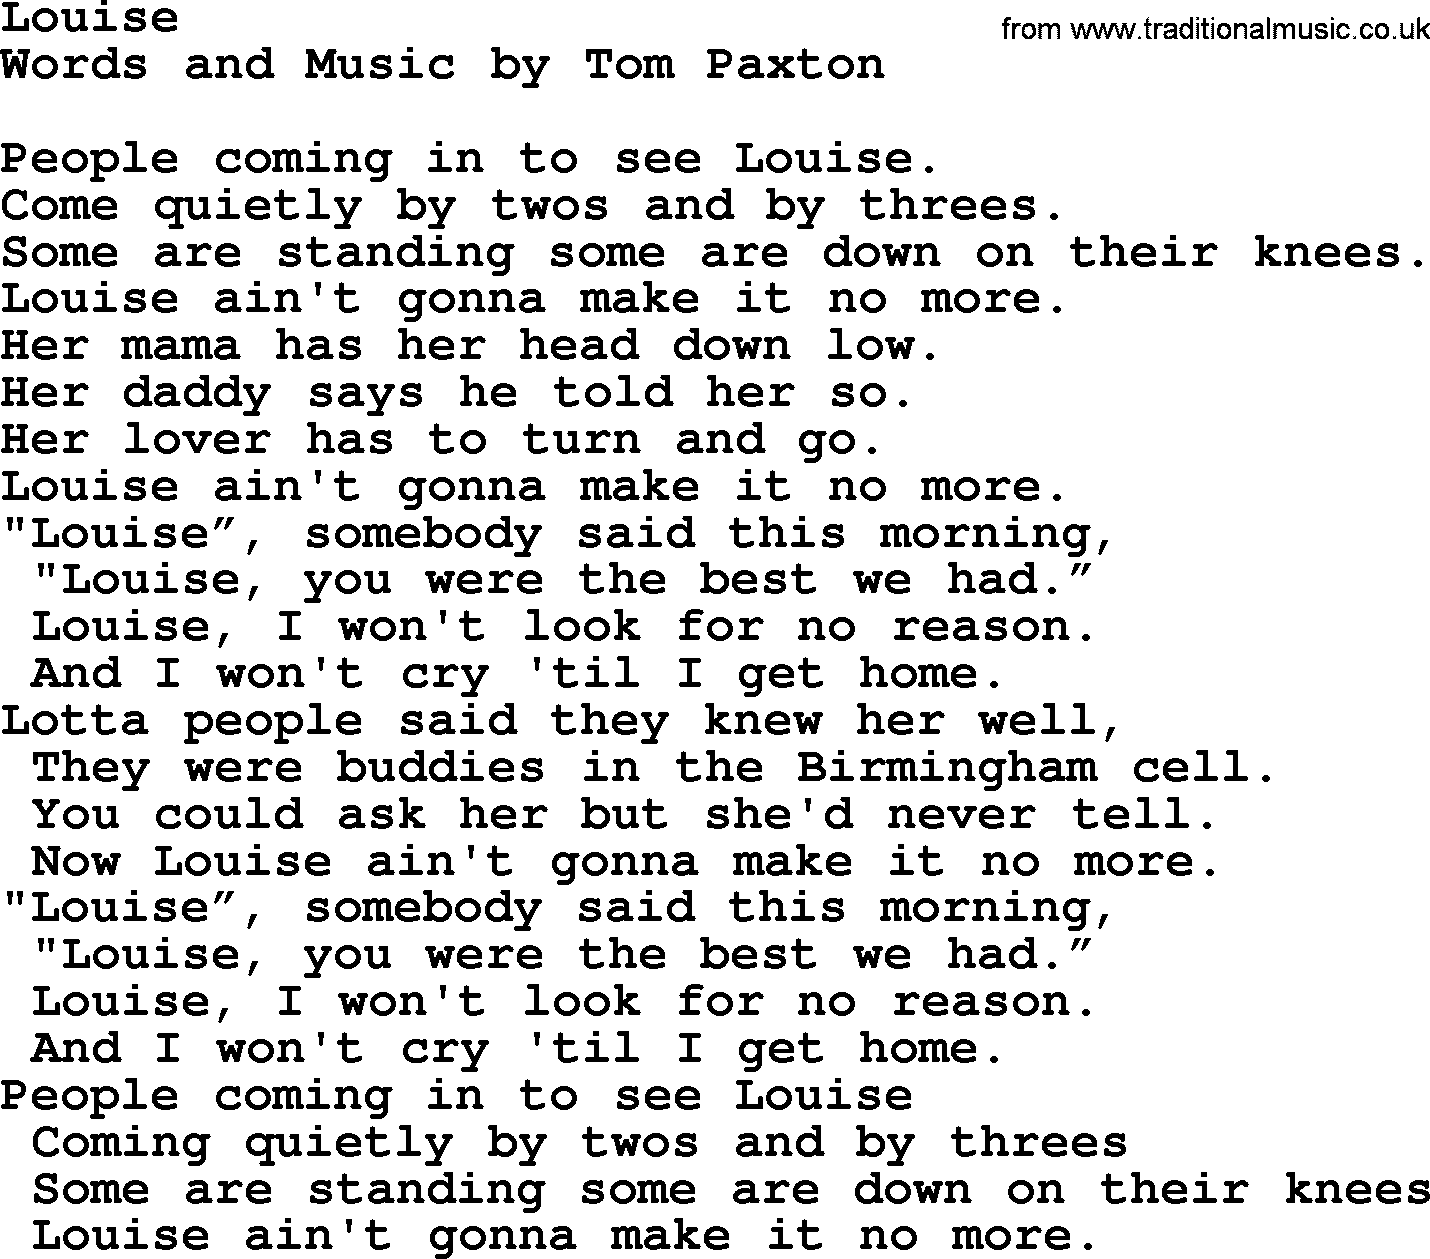 Tom Paxton song: Louise, lyrics